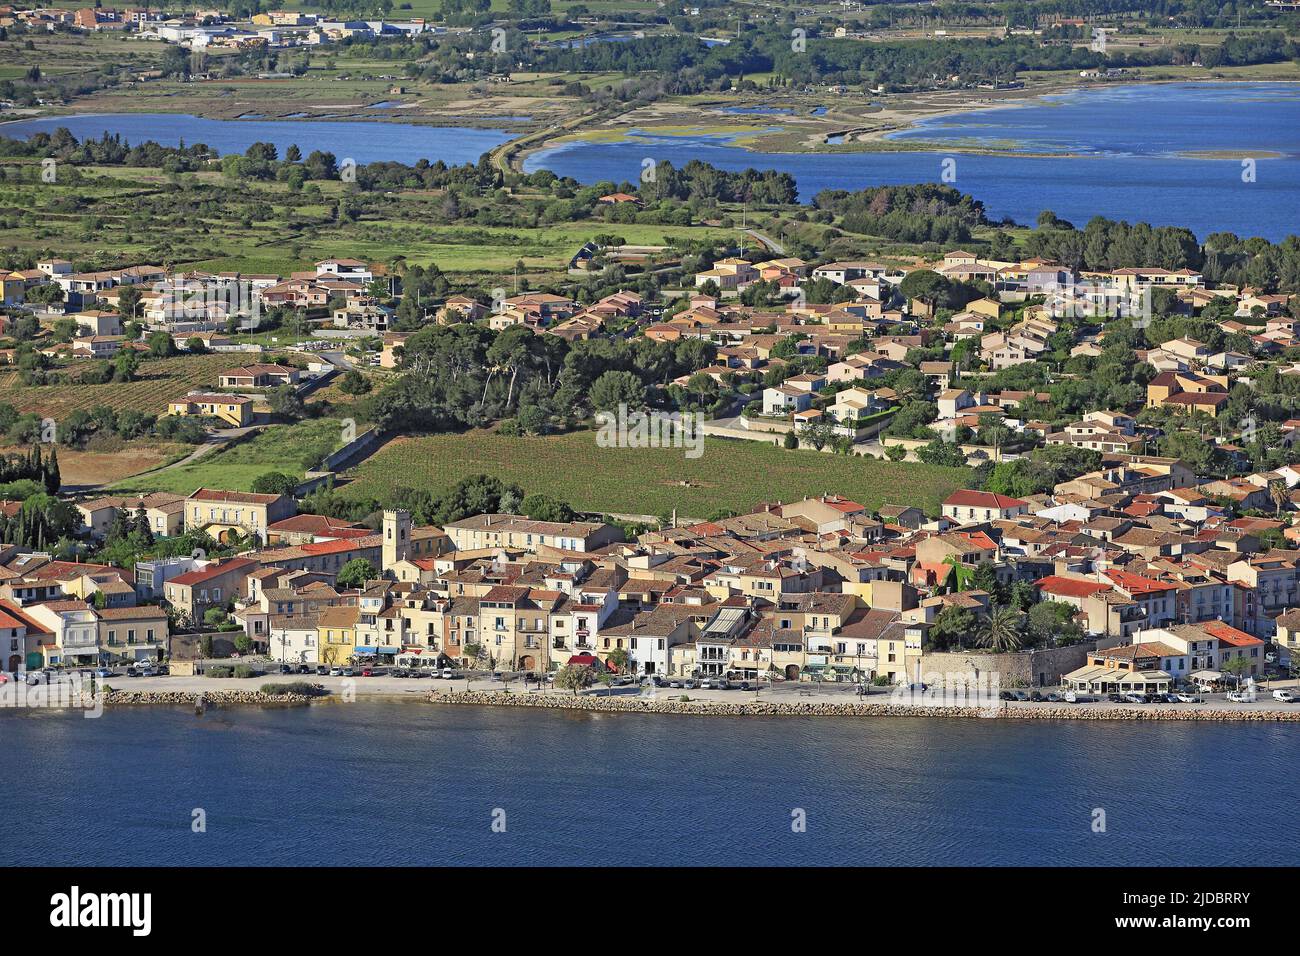 Francia, Hérault, Bouzigues, la ciudad portuaria mediterránea, situado a orillas del Etang de Thau con sus parques tiene conchas, (foto aérea) Foto de stock